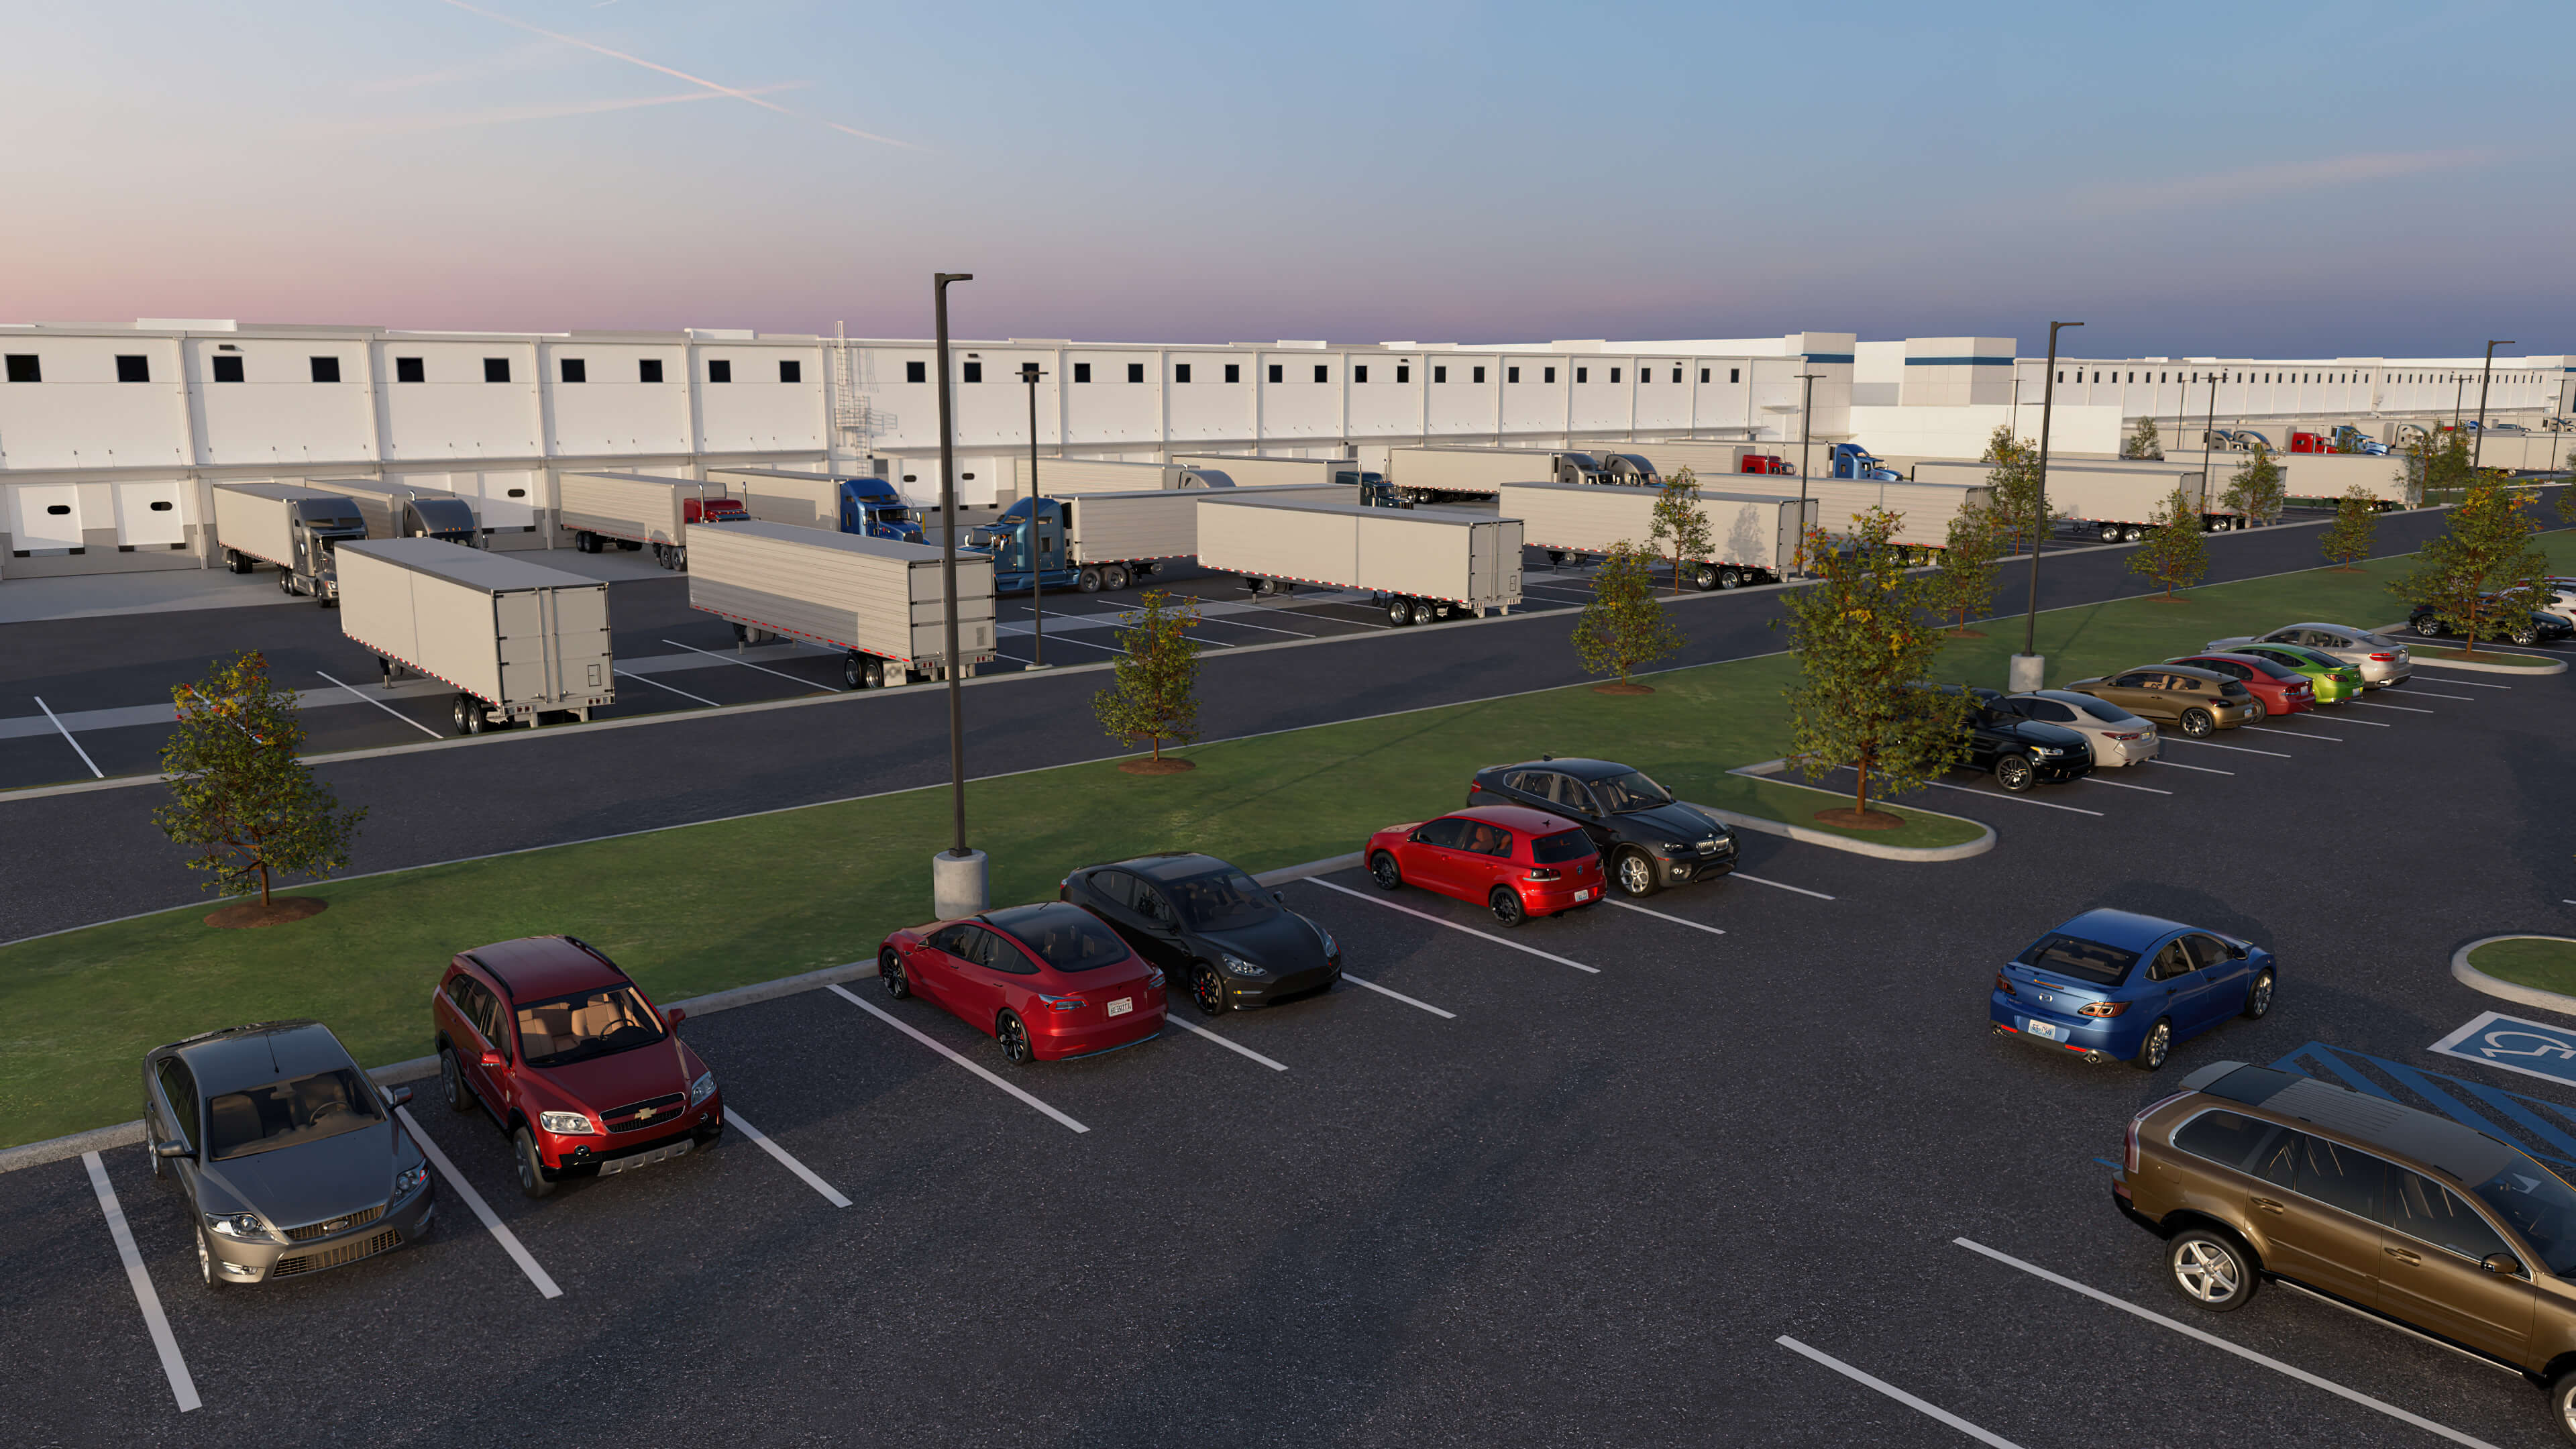 McCoy Field Logistics Center - semitruck parking court adjacent to office parking